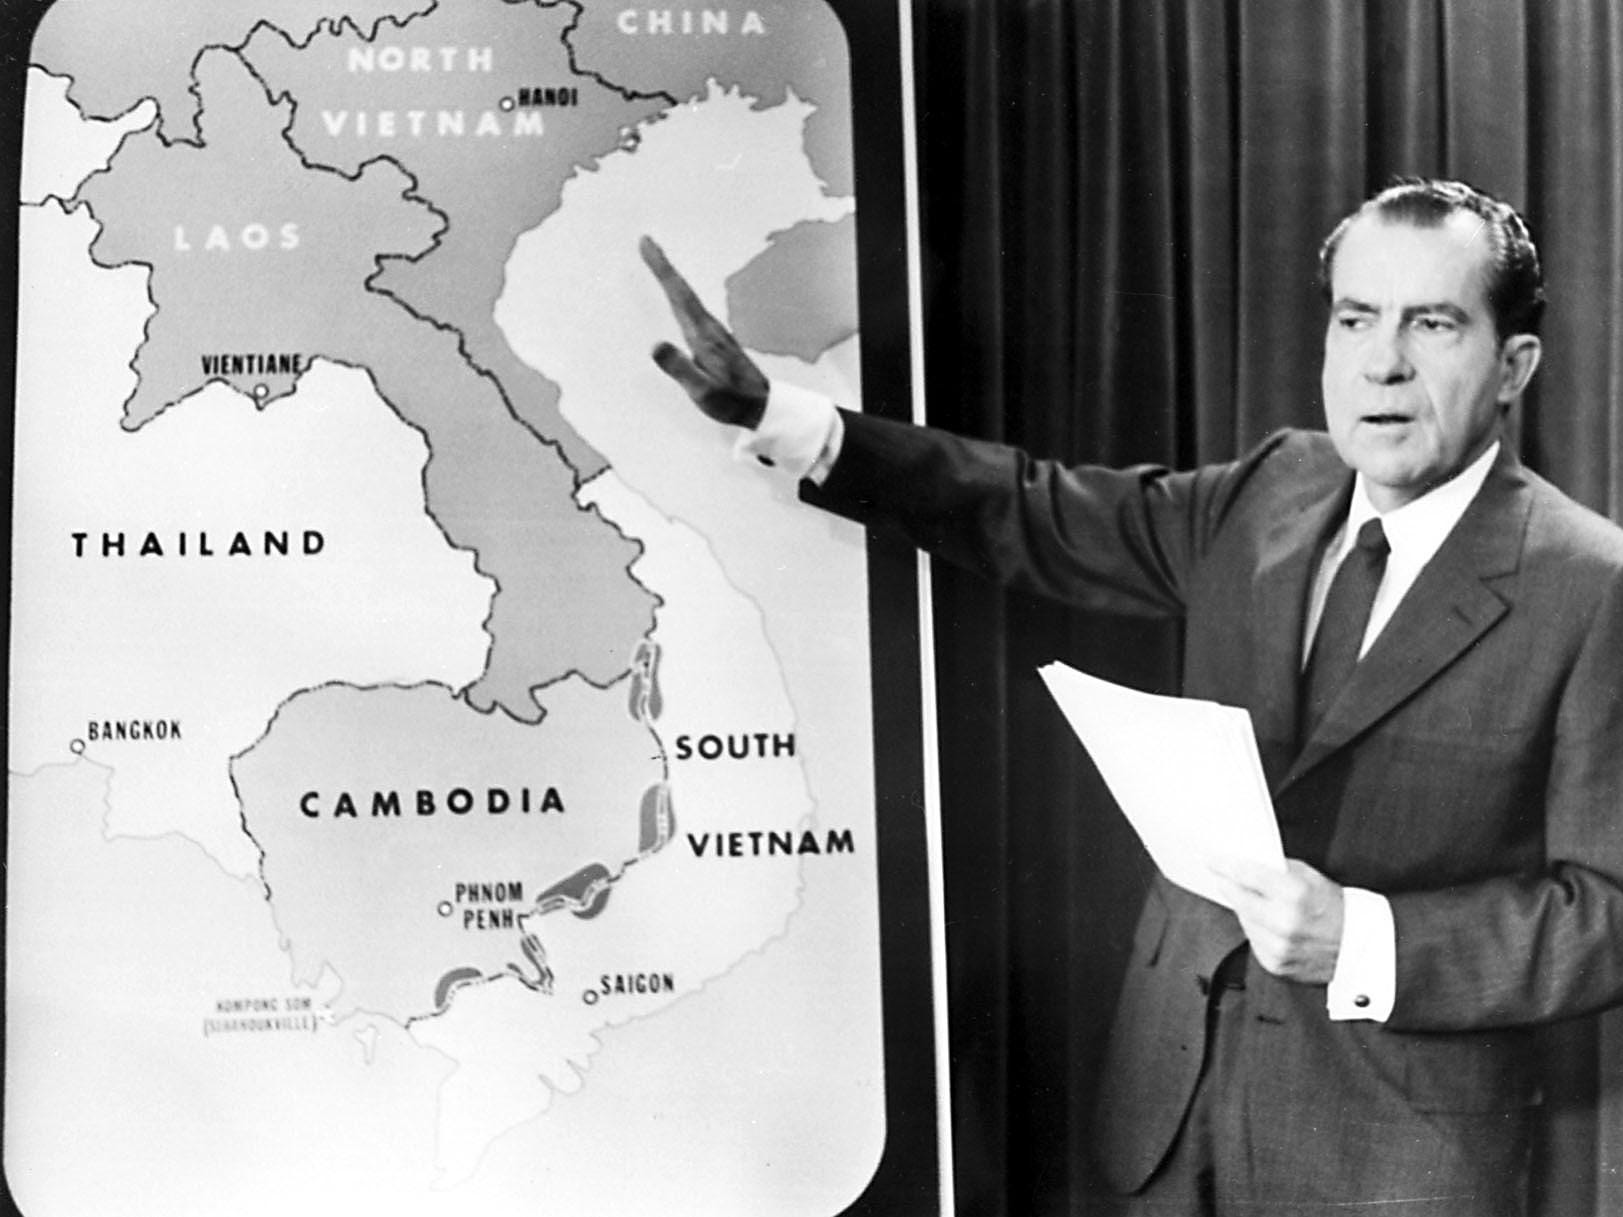 Präsident Richard Nixon zeigt auf eine Karte von Vietnam und Laos.